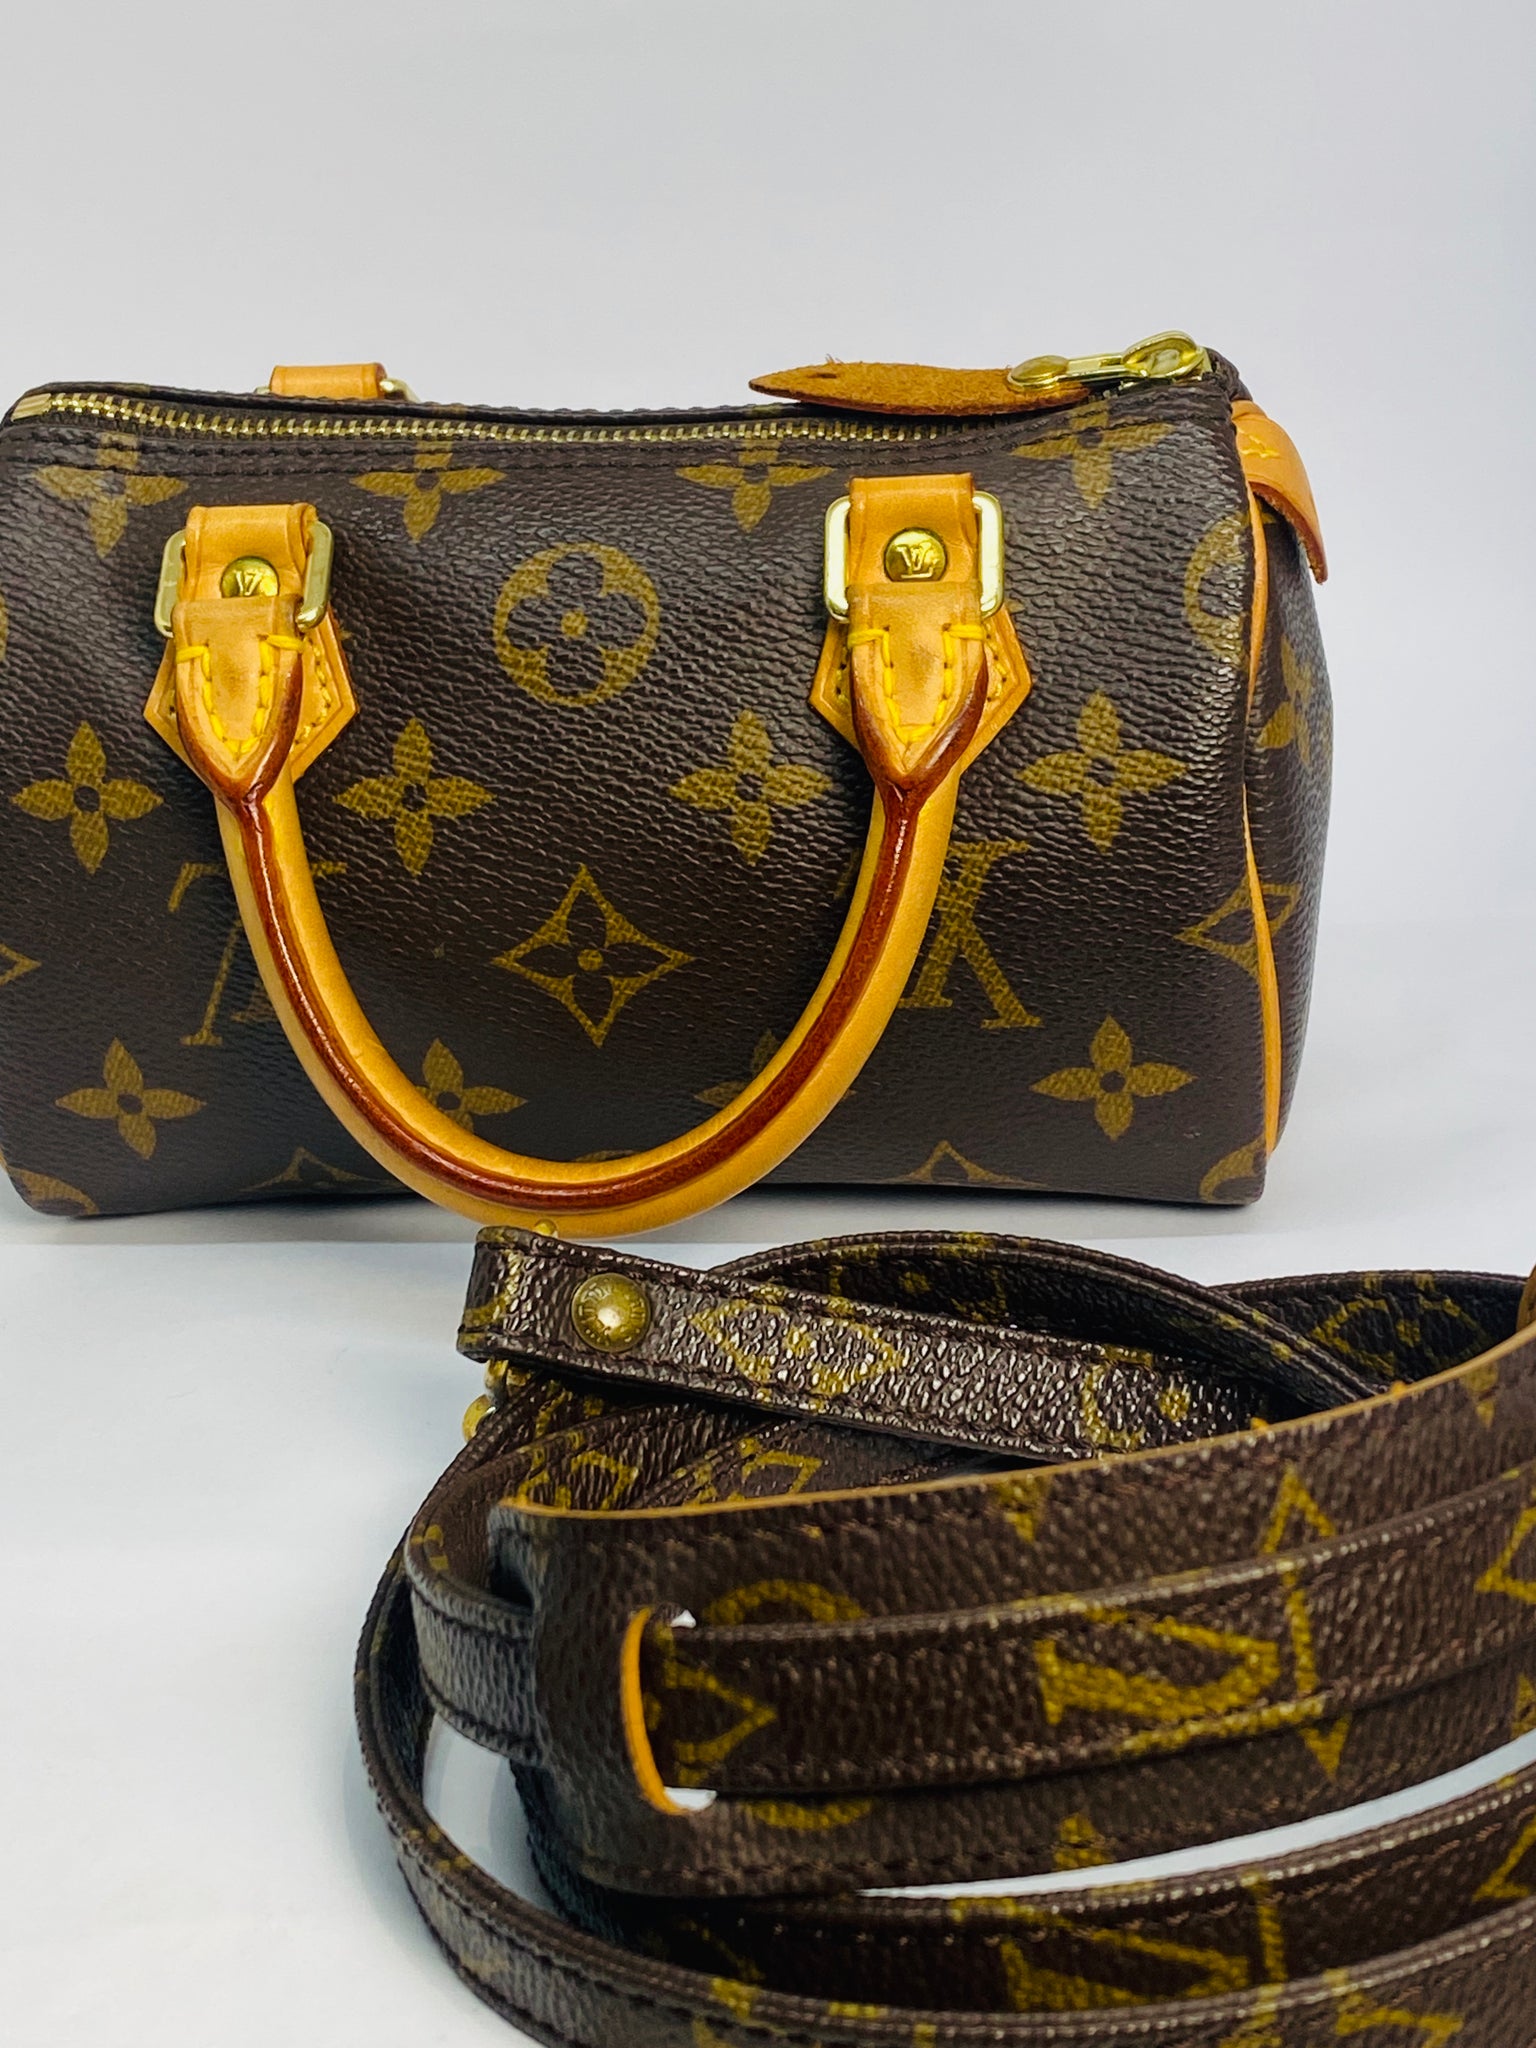 Louis Vuitton Mini Speedy - Good or Bag